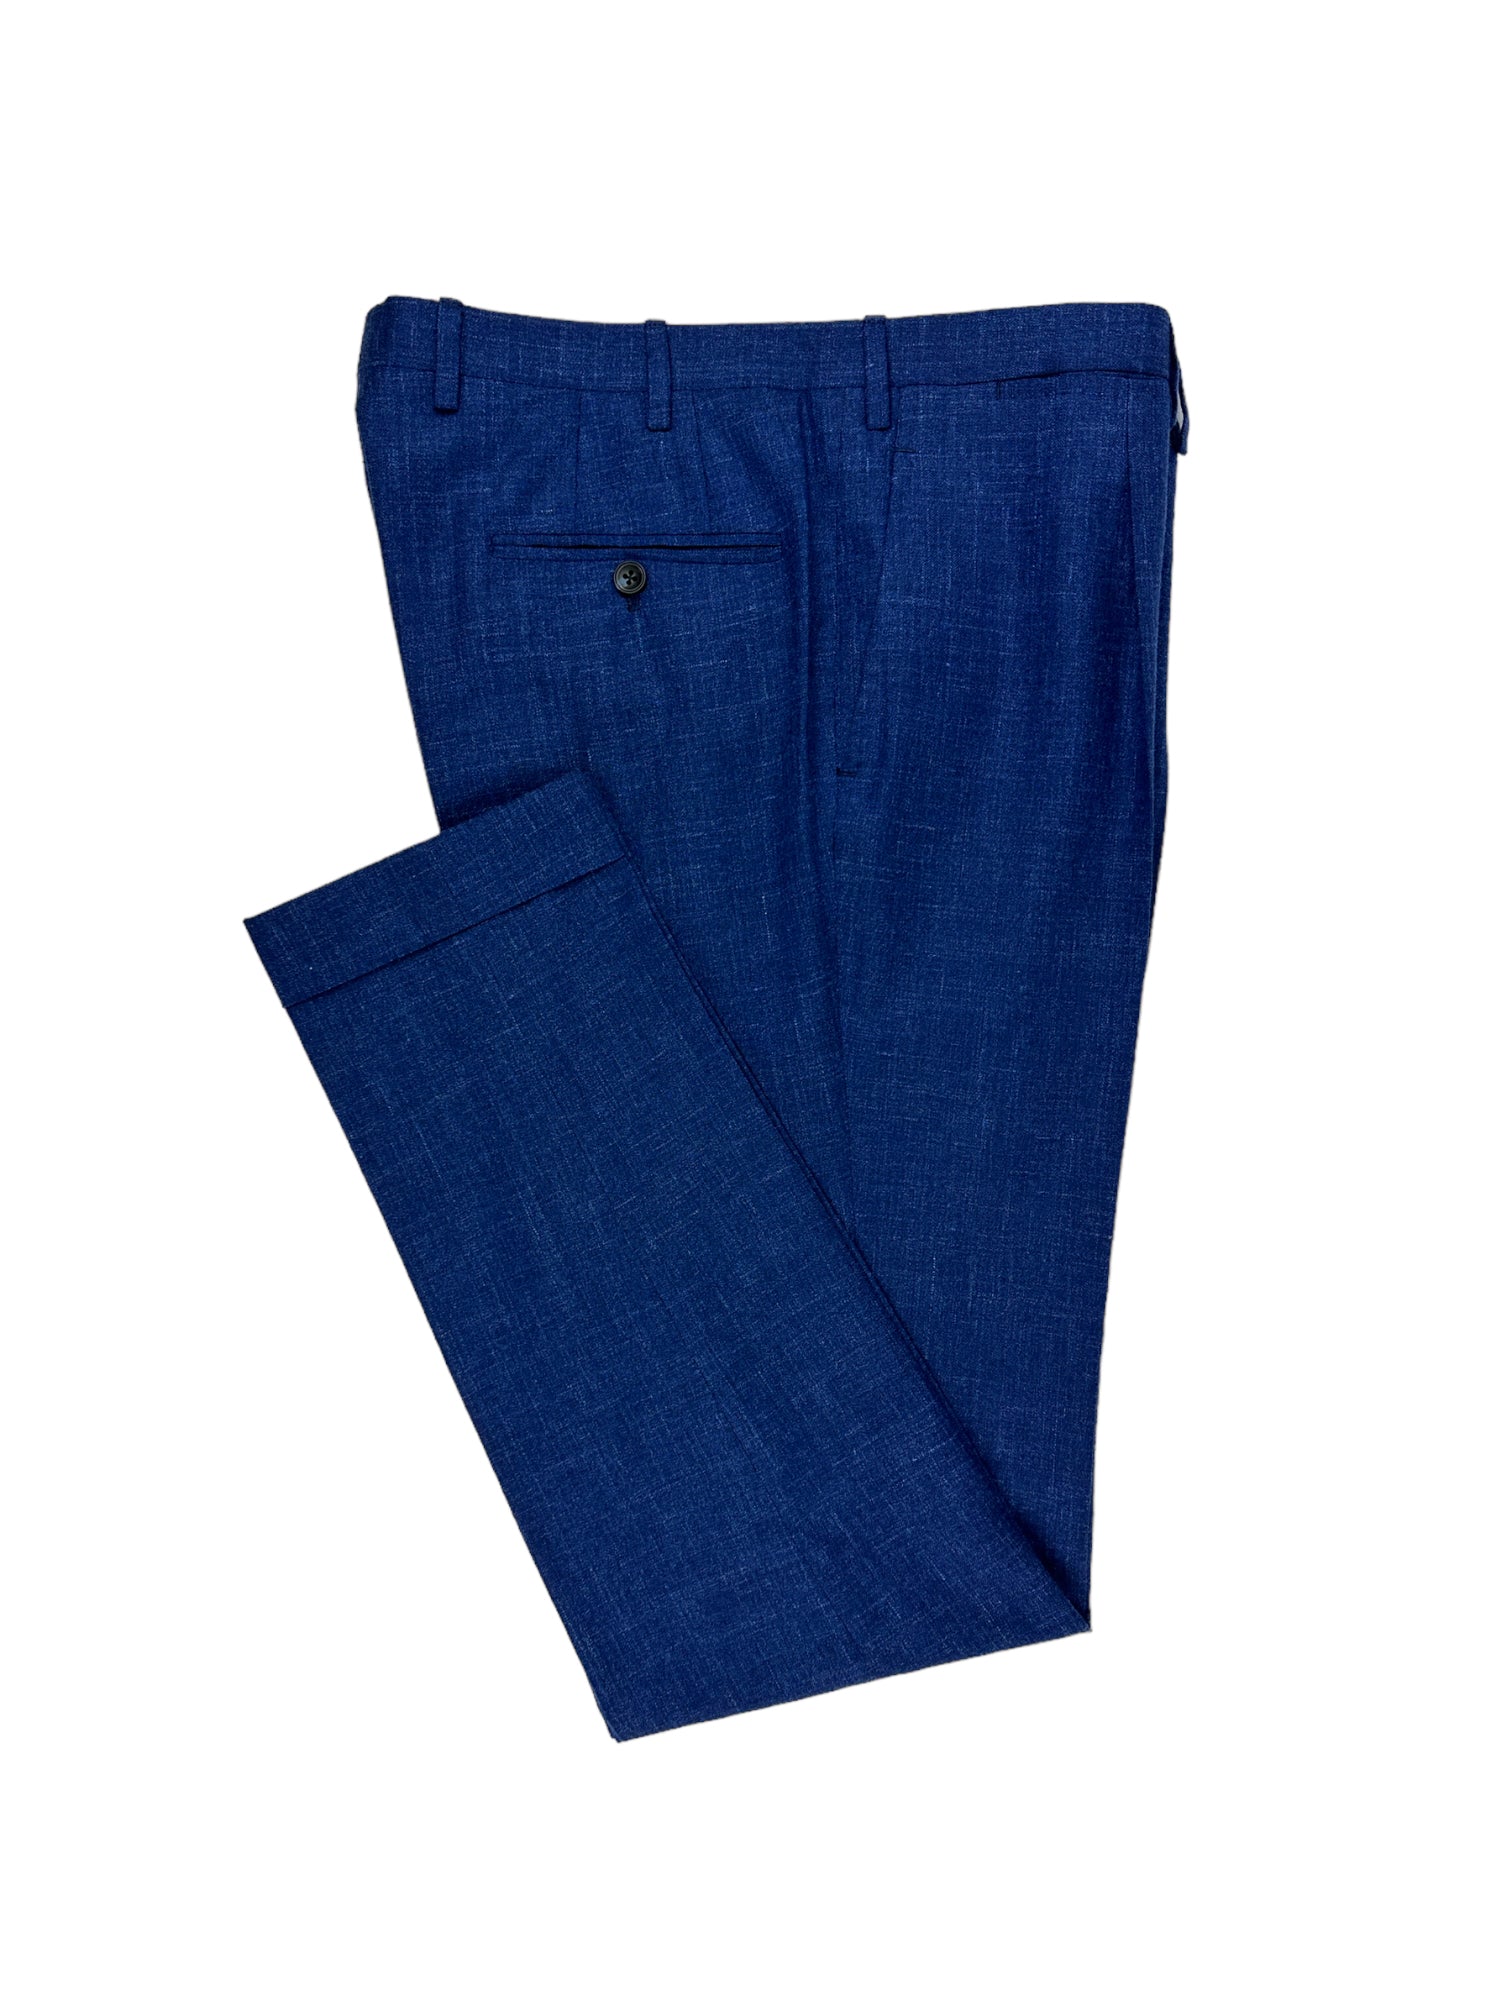 Kiton Cobalt-Blue Cashmere, Linen and Silk Suit